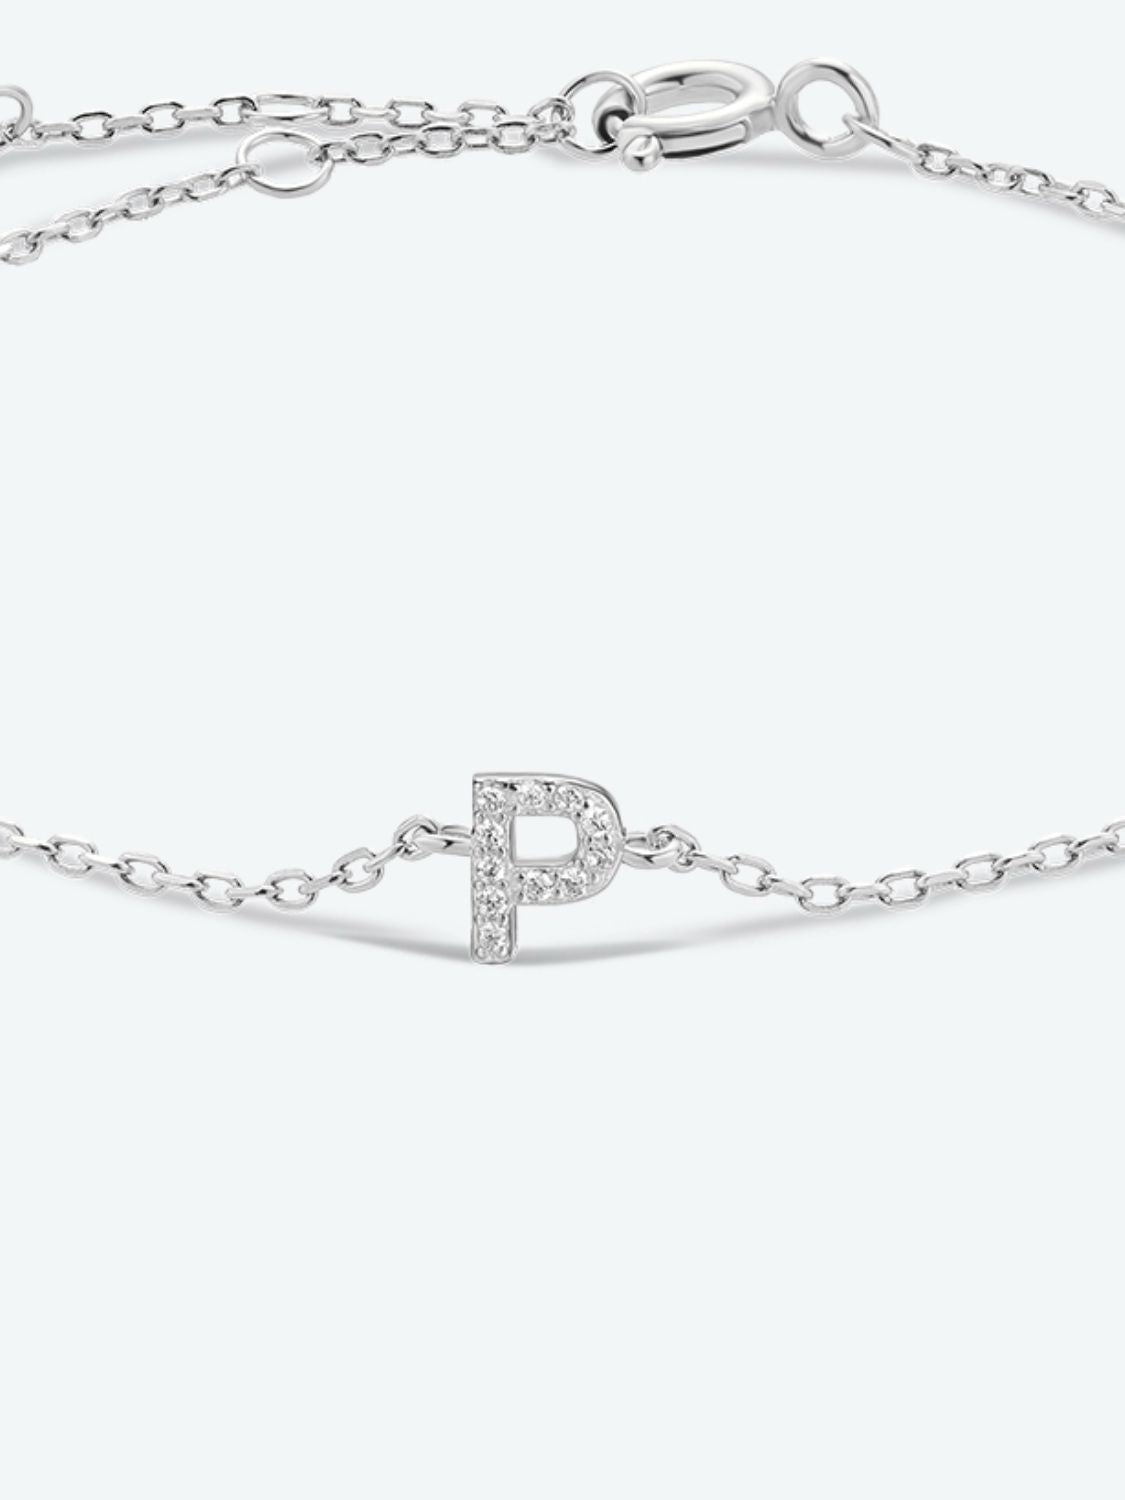 L To P Zircon 925 Sterling Silver Bracelet - Women’s Jewelry - Bracelets - 30 - 2024